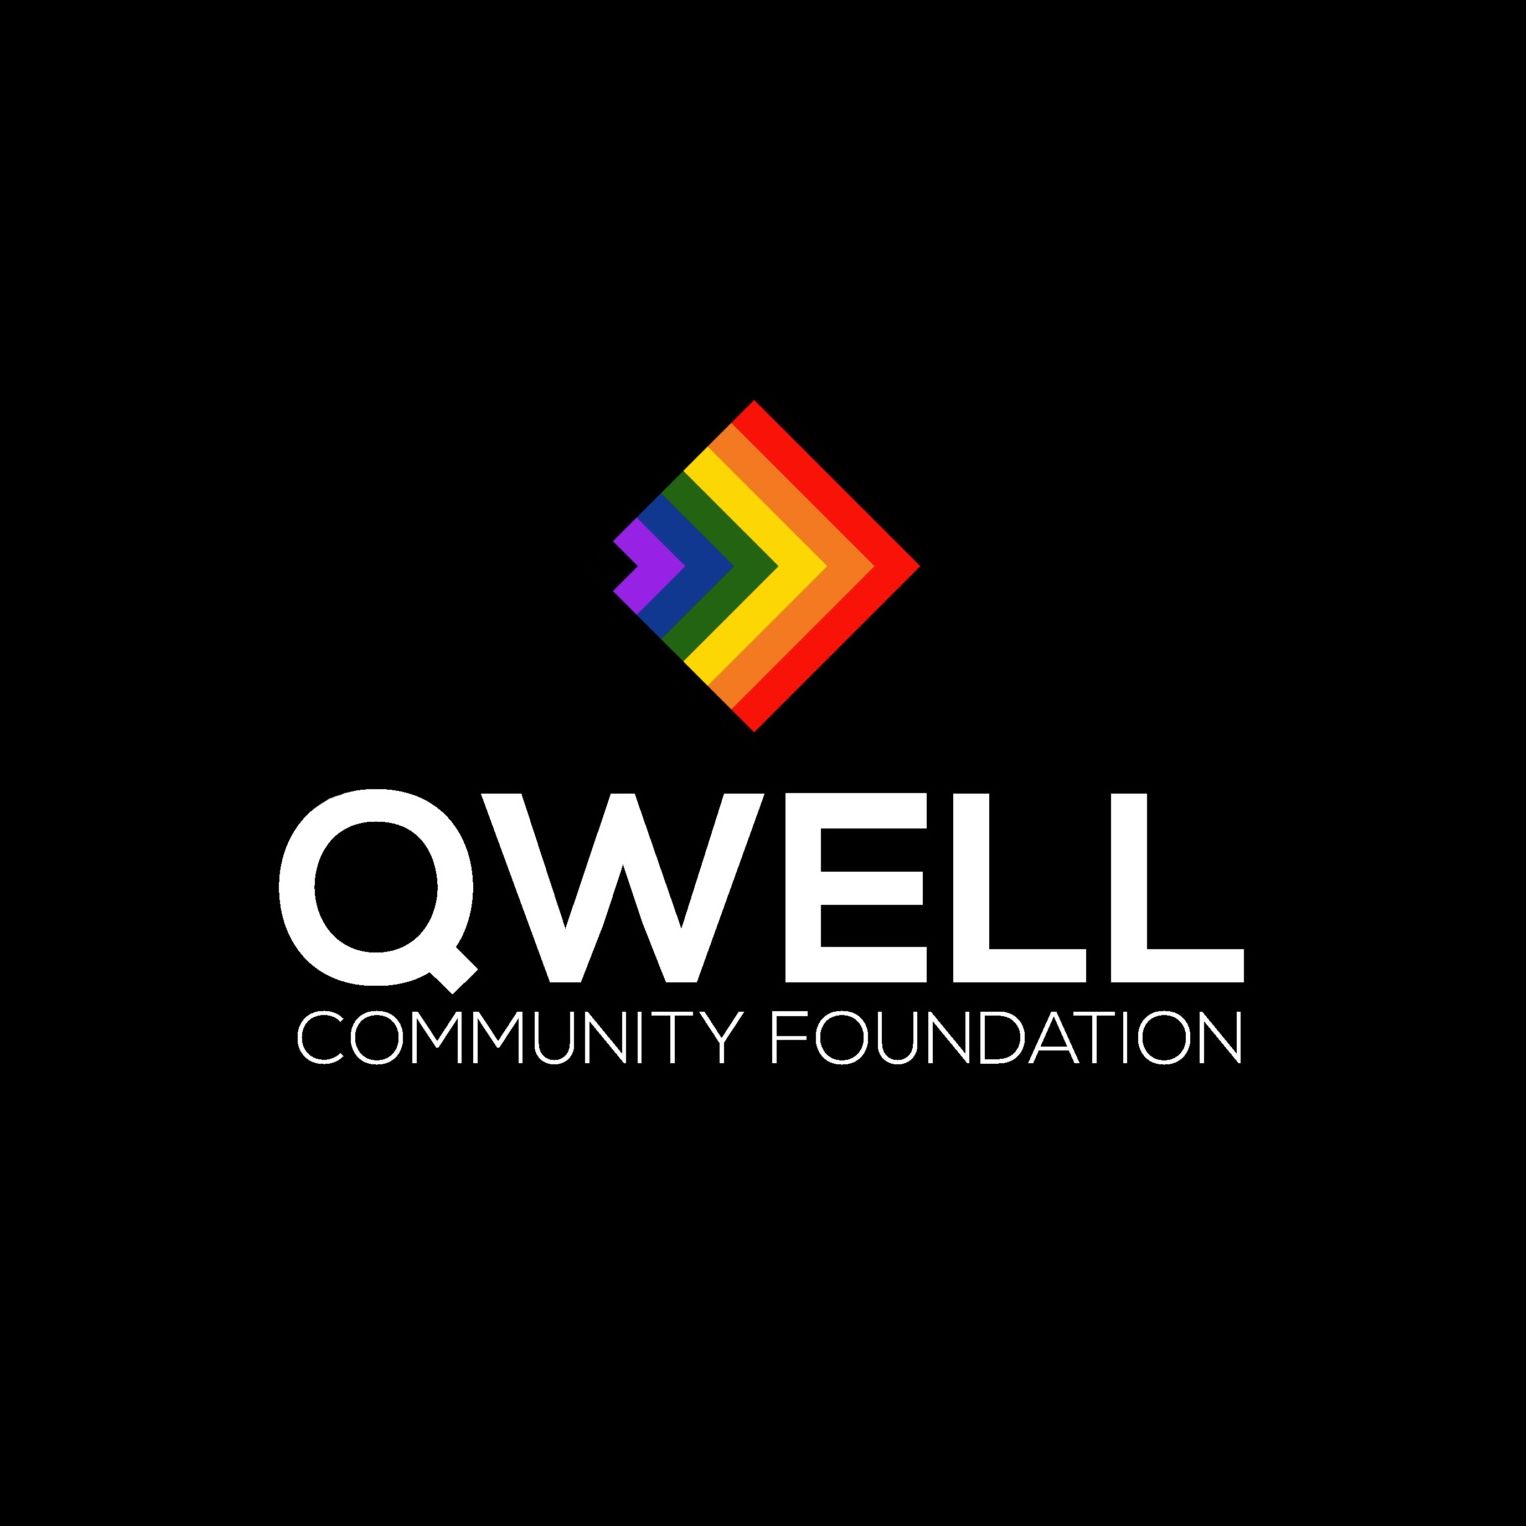 LGBTQ Organization in Dallas Texas - QWELL Community Foundation